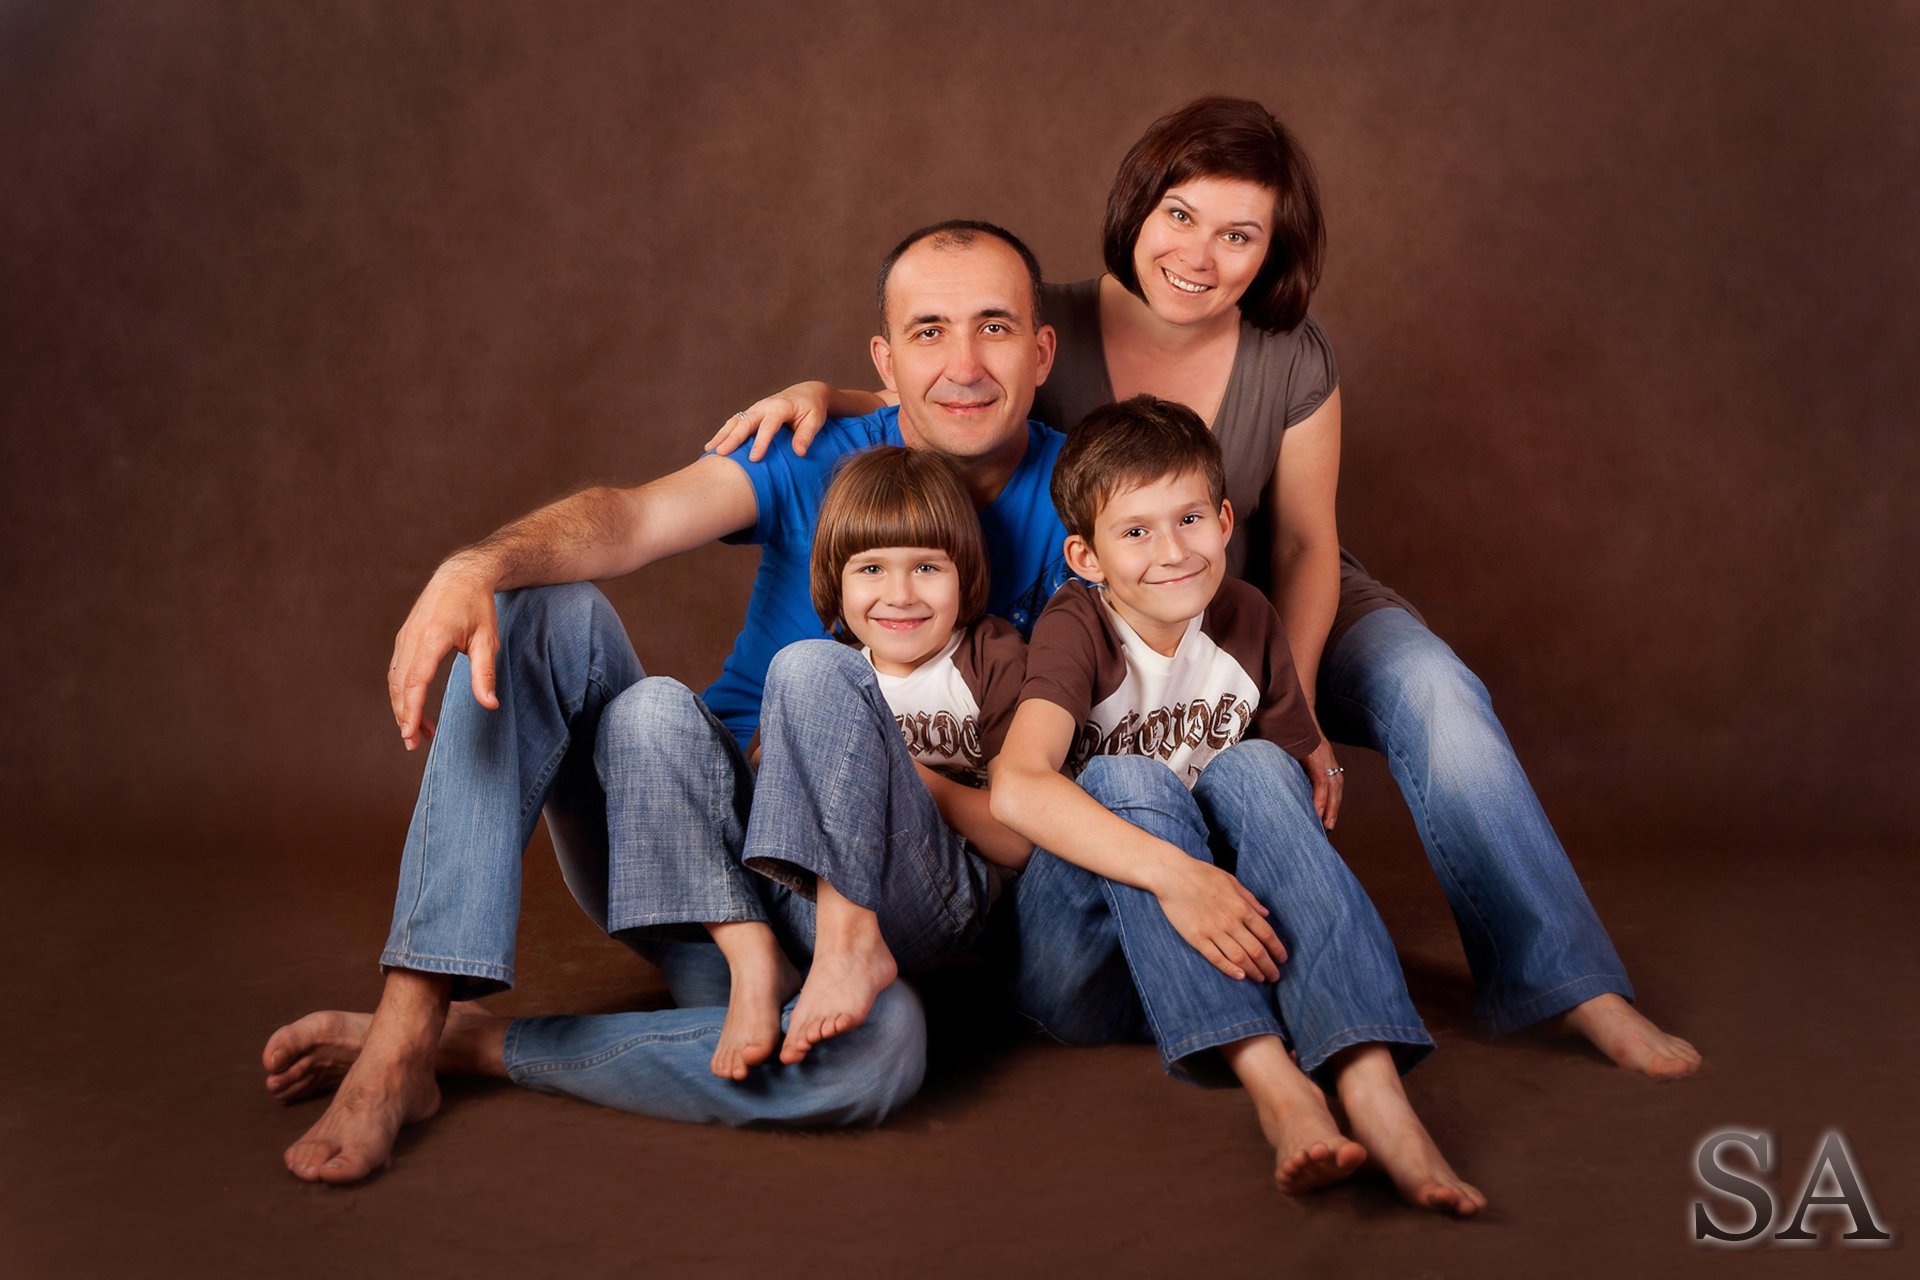 История жизни обычной семьи 37. Семейная фотосессия. Семейный портрет. Интересные семейные фотосессии. Идеи для фотосессии в студии.